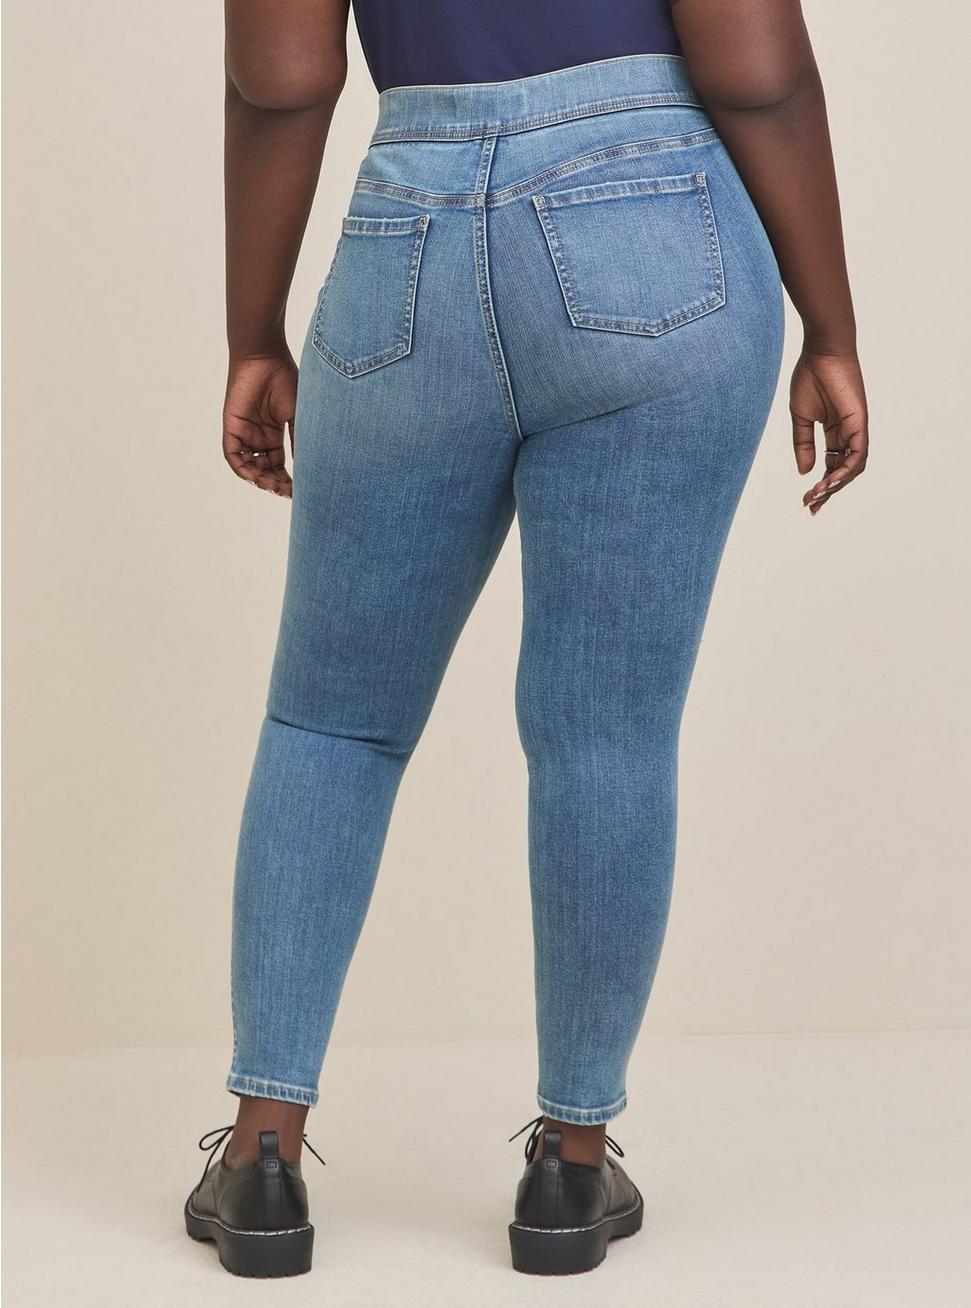 Plus Size Lean Jean Skinny Super Soft High-Rise Jean, NOVA, alternate